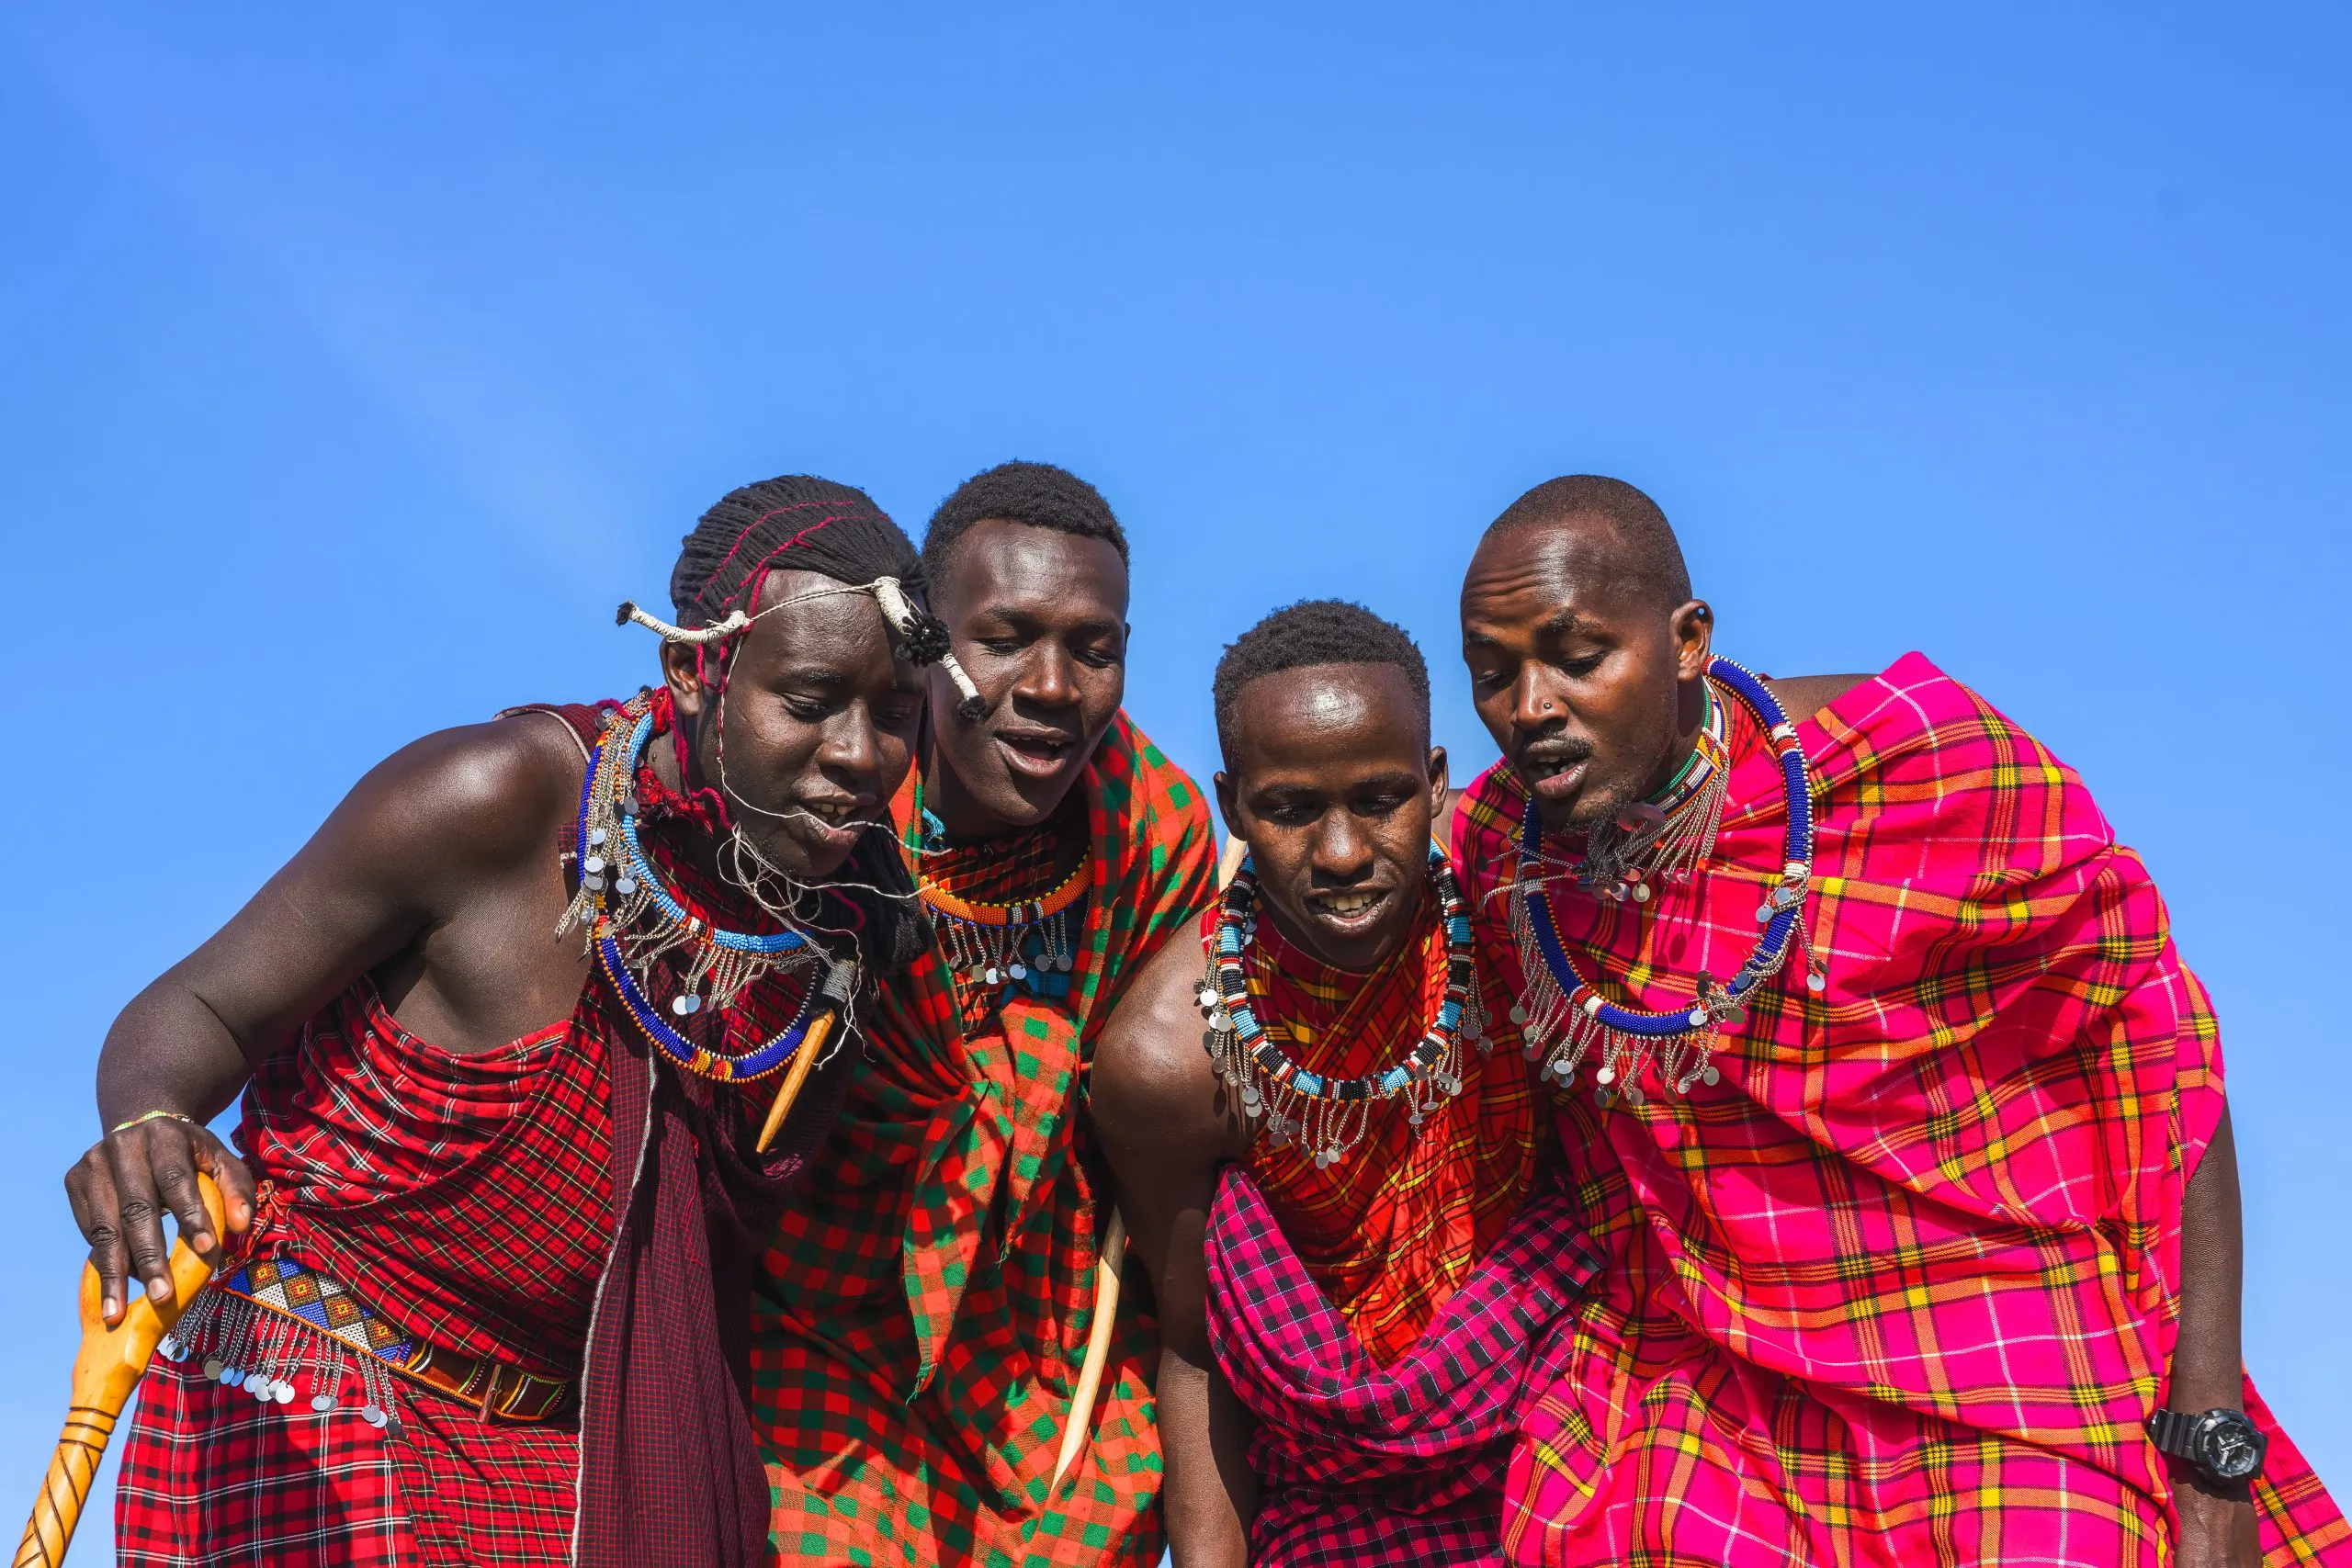 Homem de Maasai Mara a mostrar a dança tradicional de saltos dos Maasai